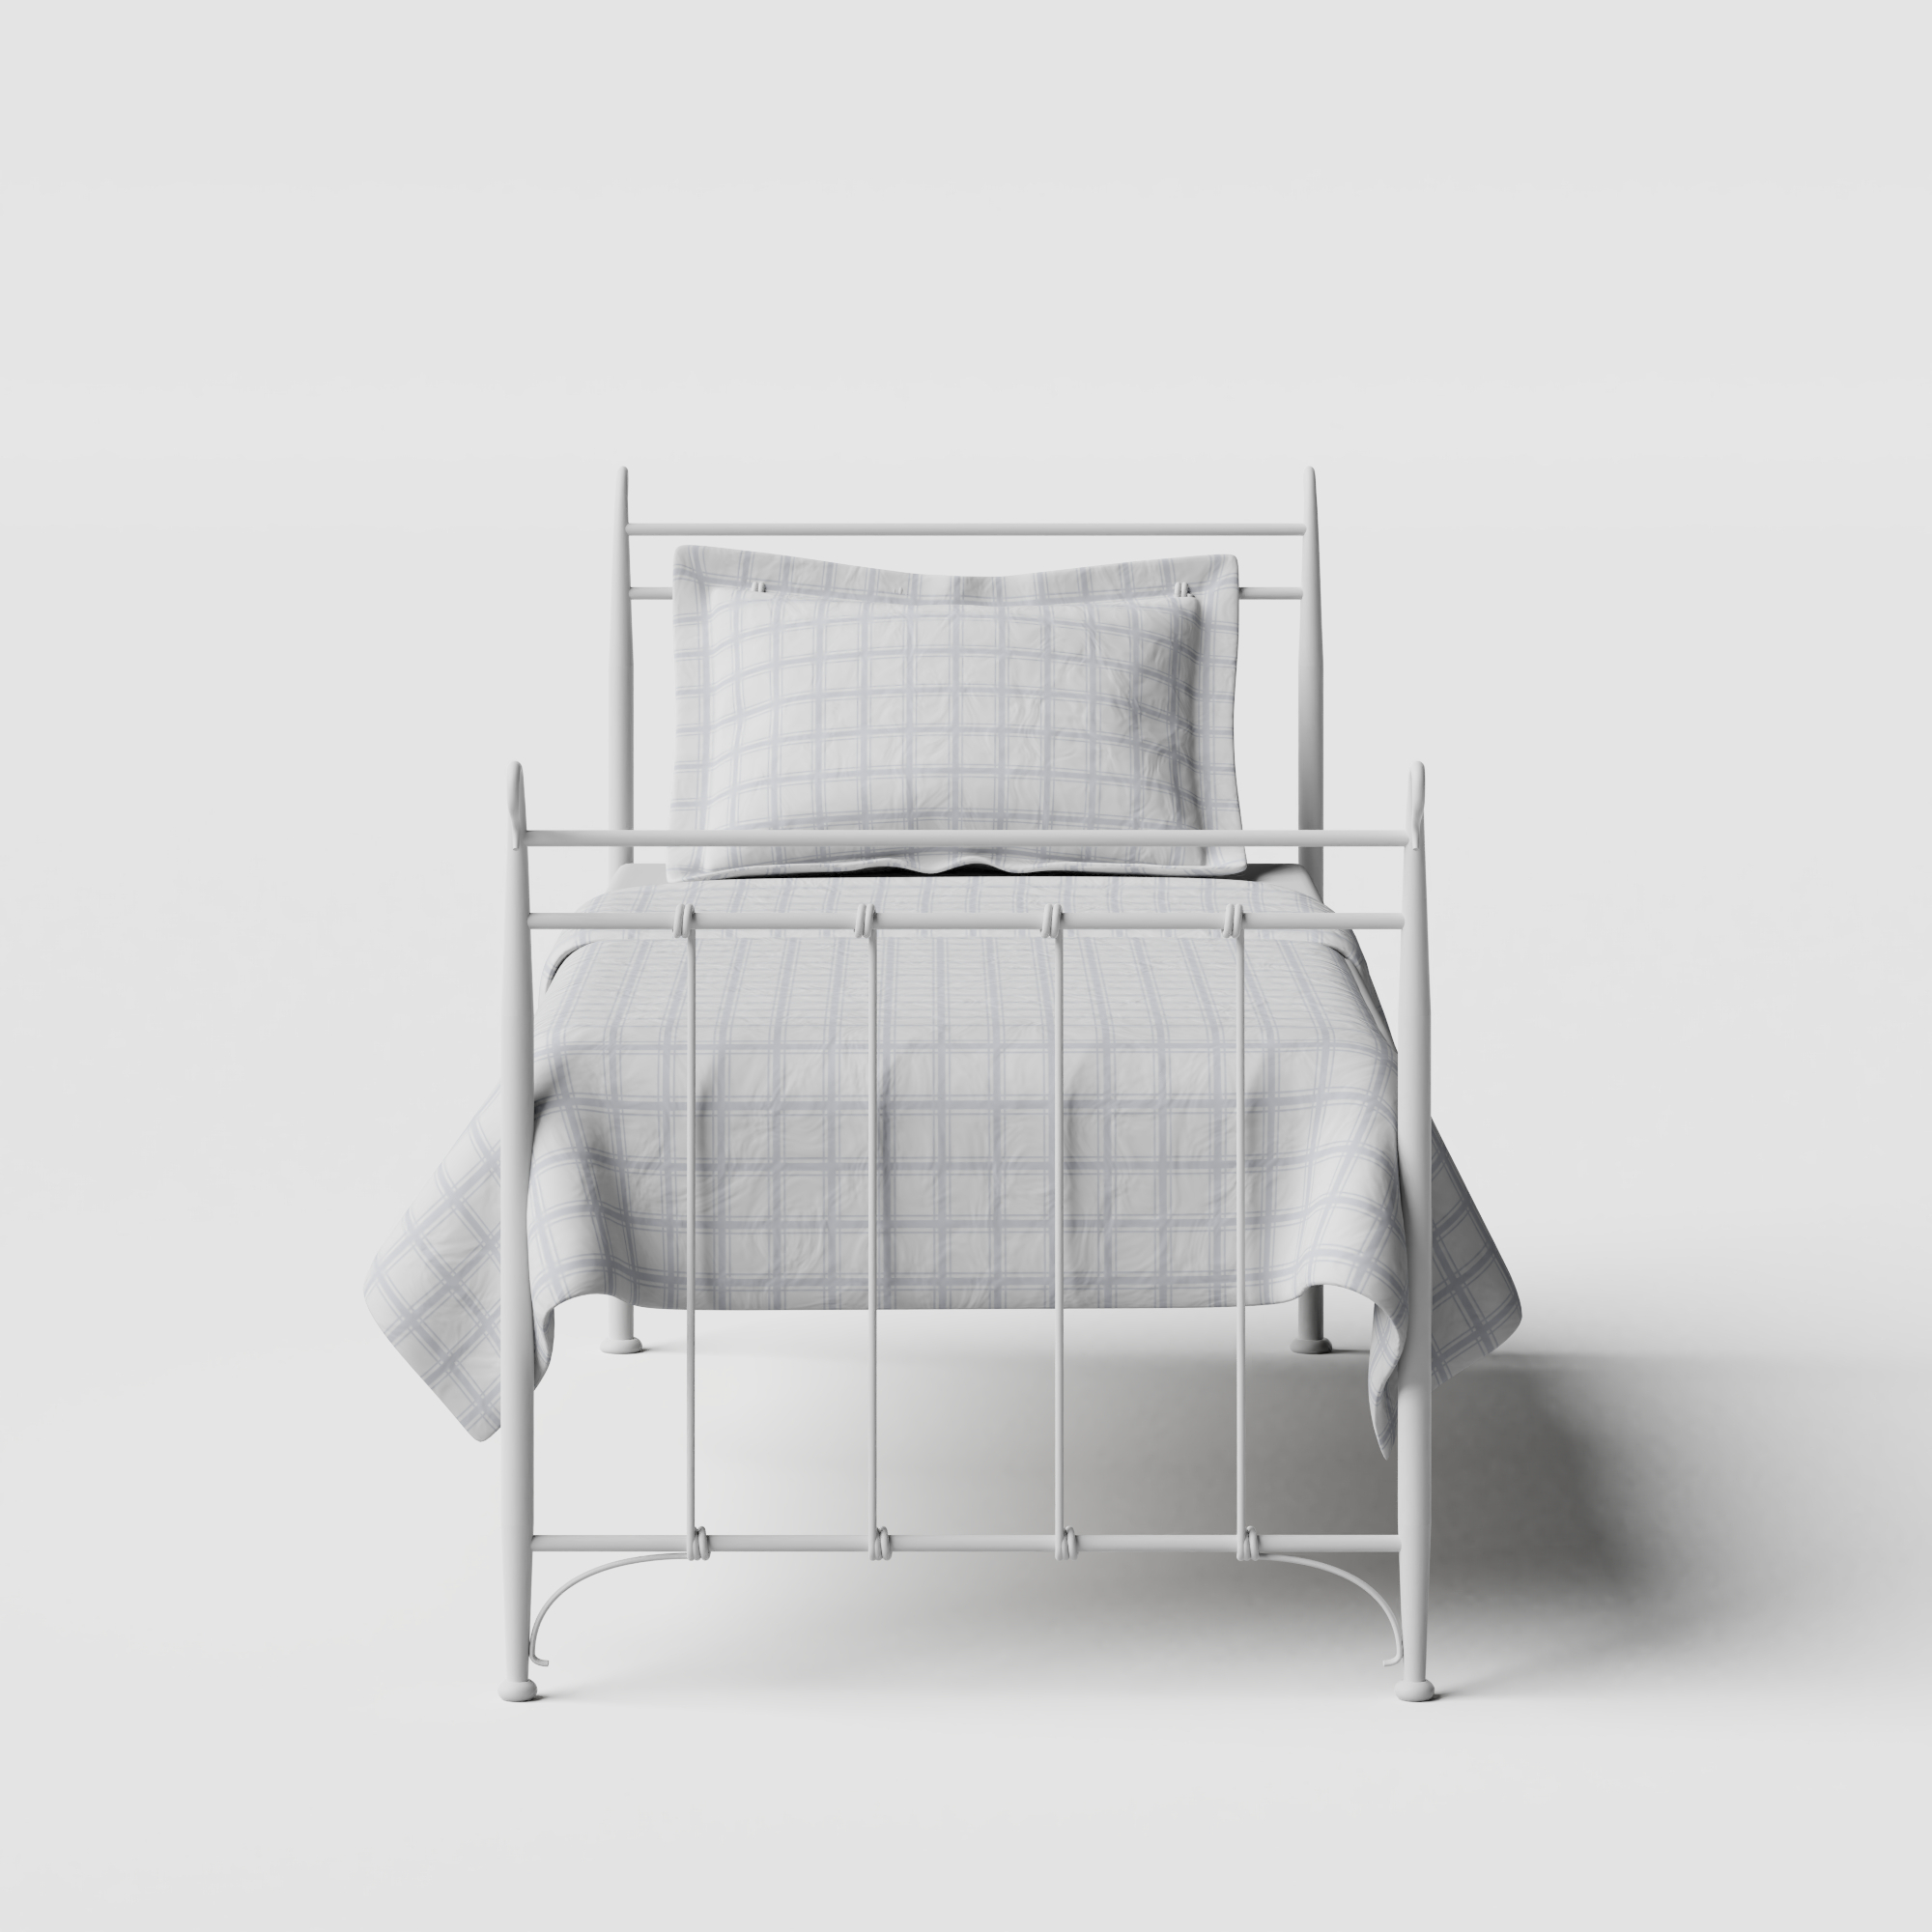 Tiffany cama individual de metal en blanco